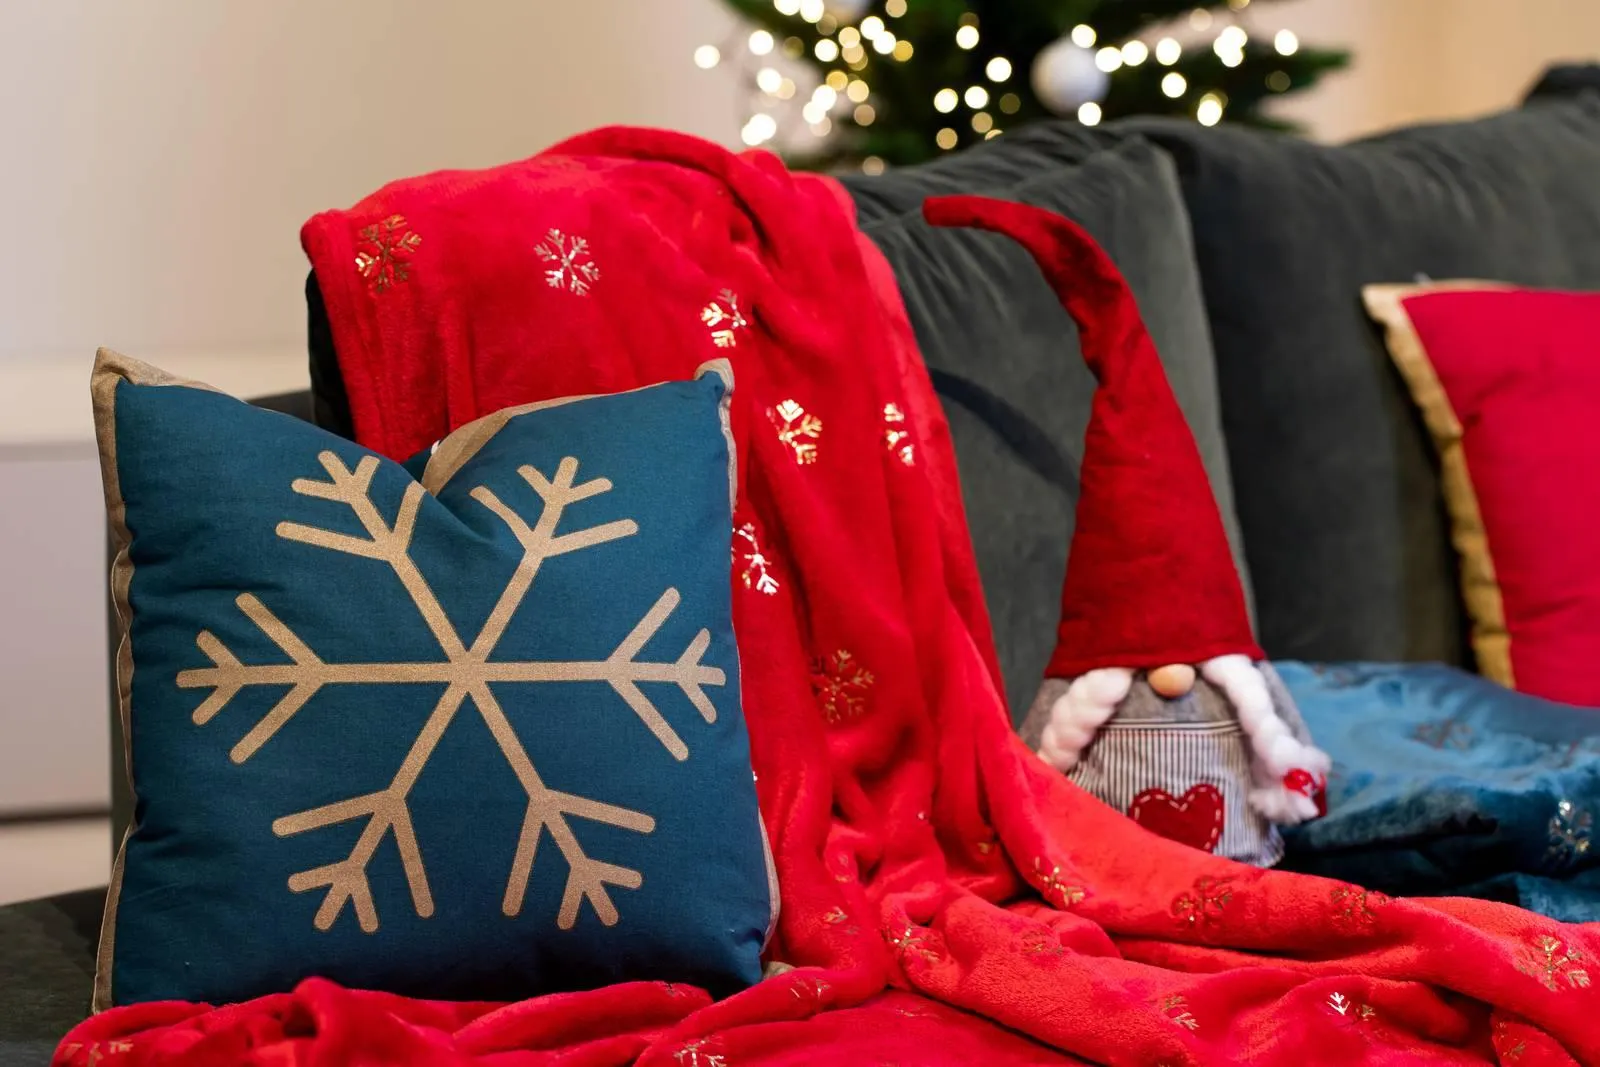 Regali per il Natale 2020? Una coccola speciale con la collezione Bella  Vita - Cose di Casa